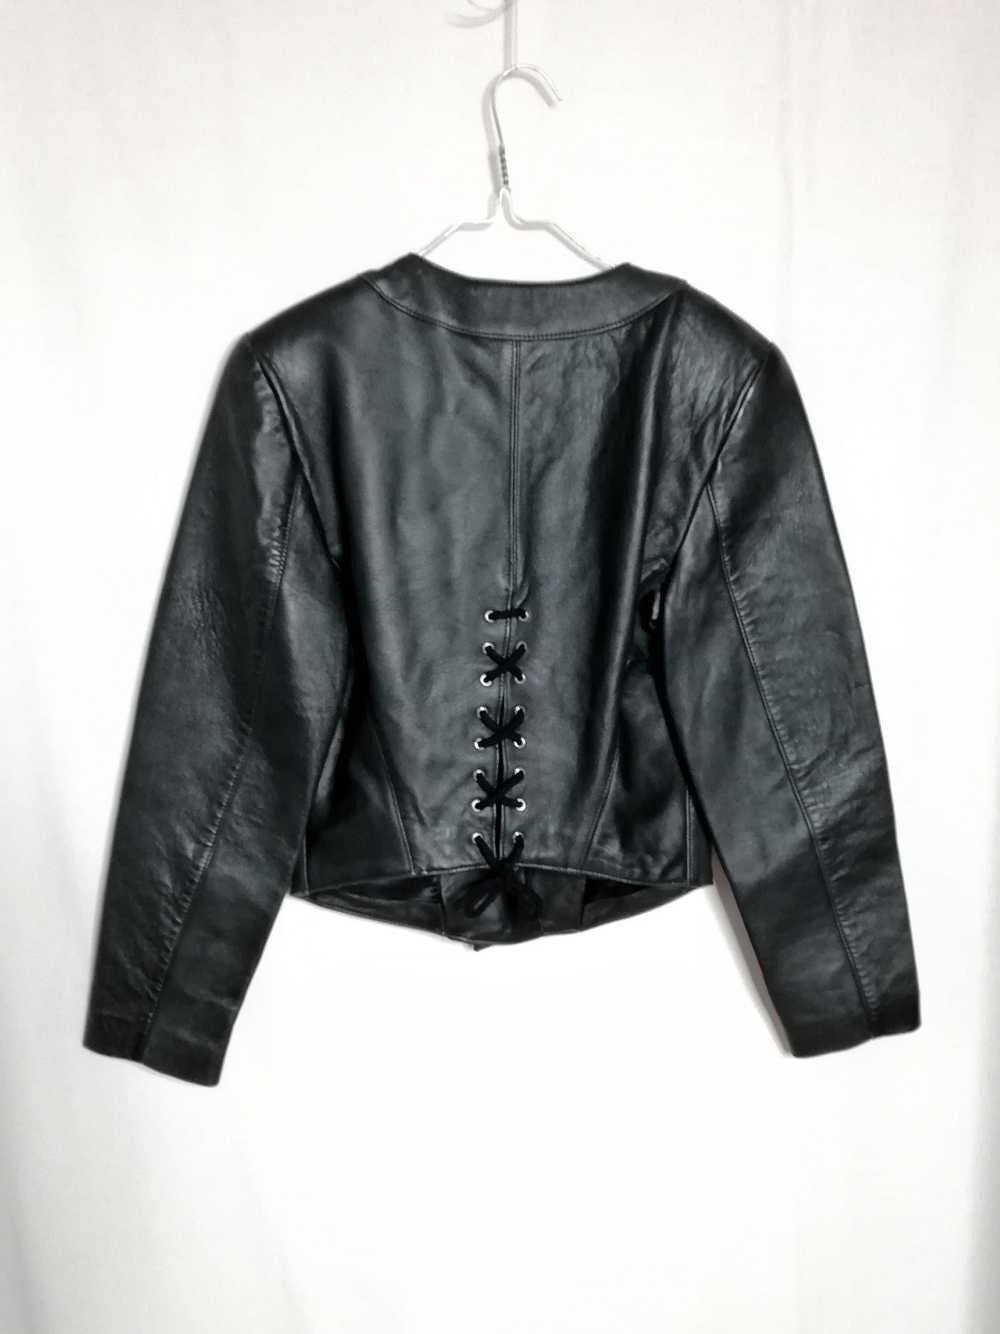 Veste en cuir - Veste noir en cuir, coupe courte,… - image 2